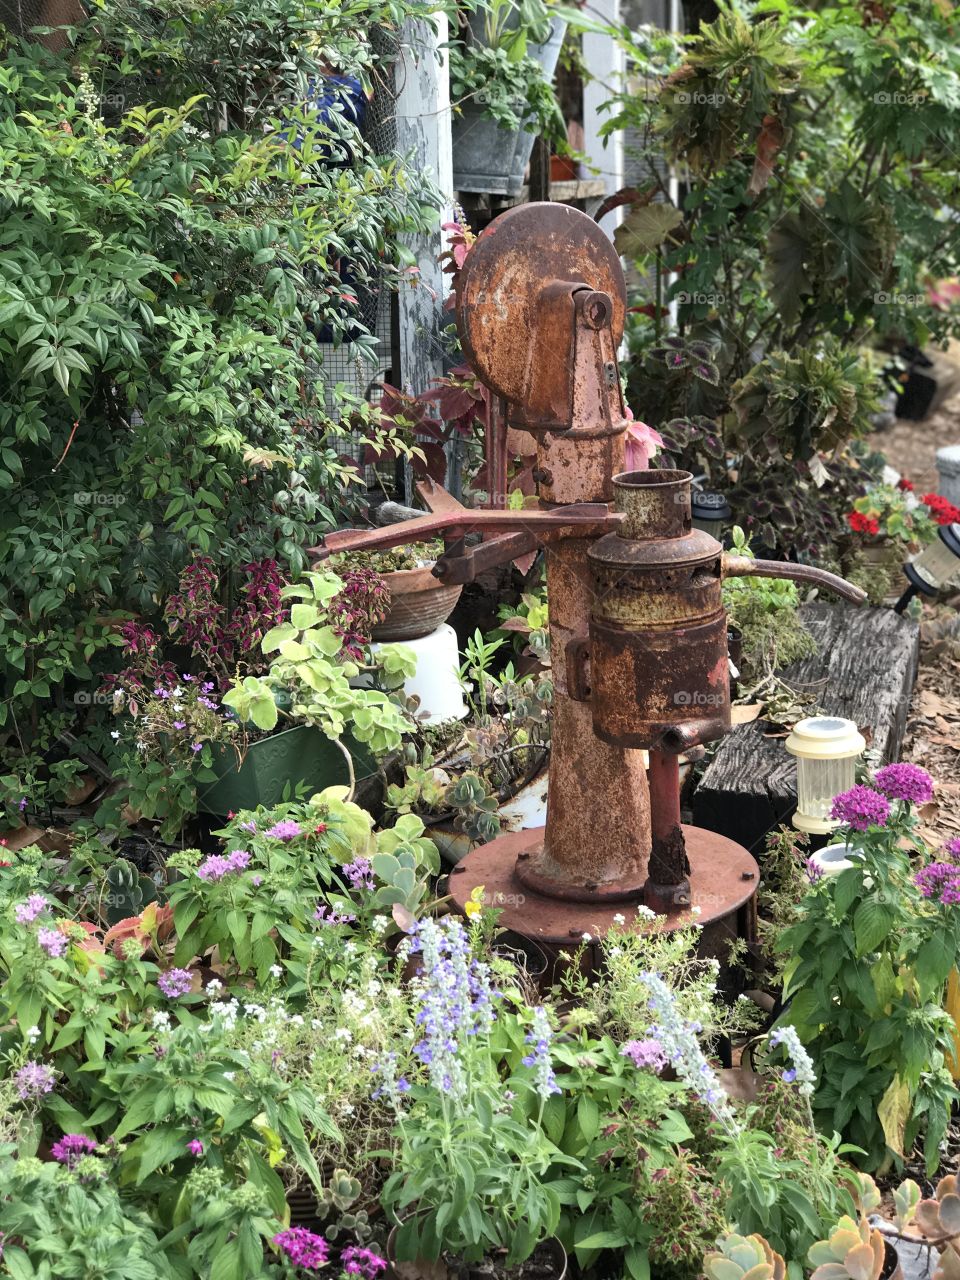 Water pump in the garden 